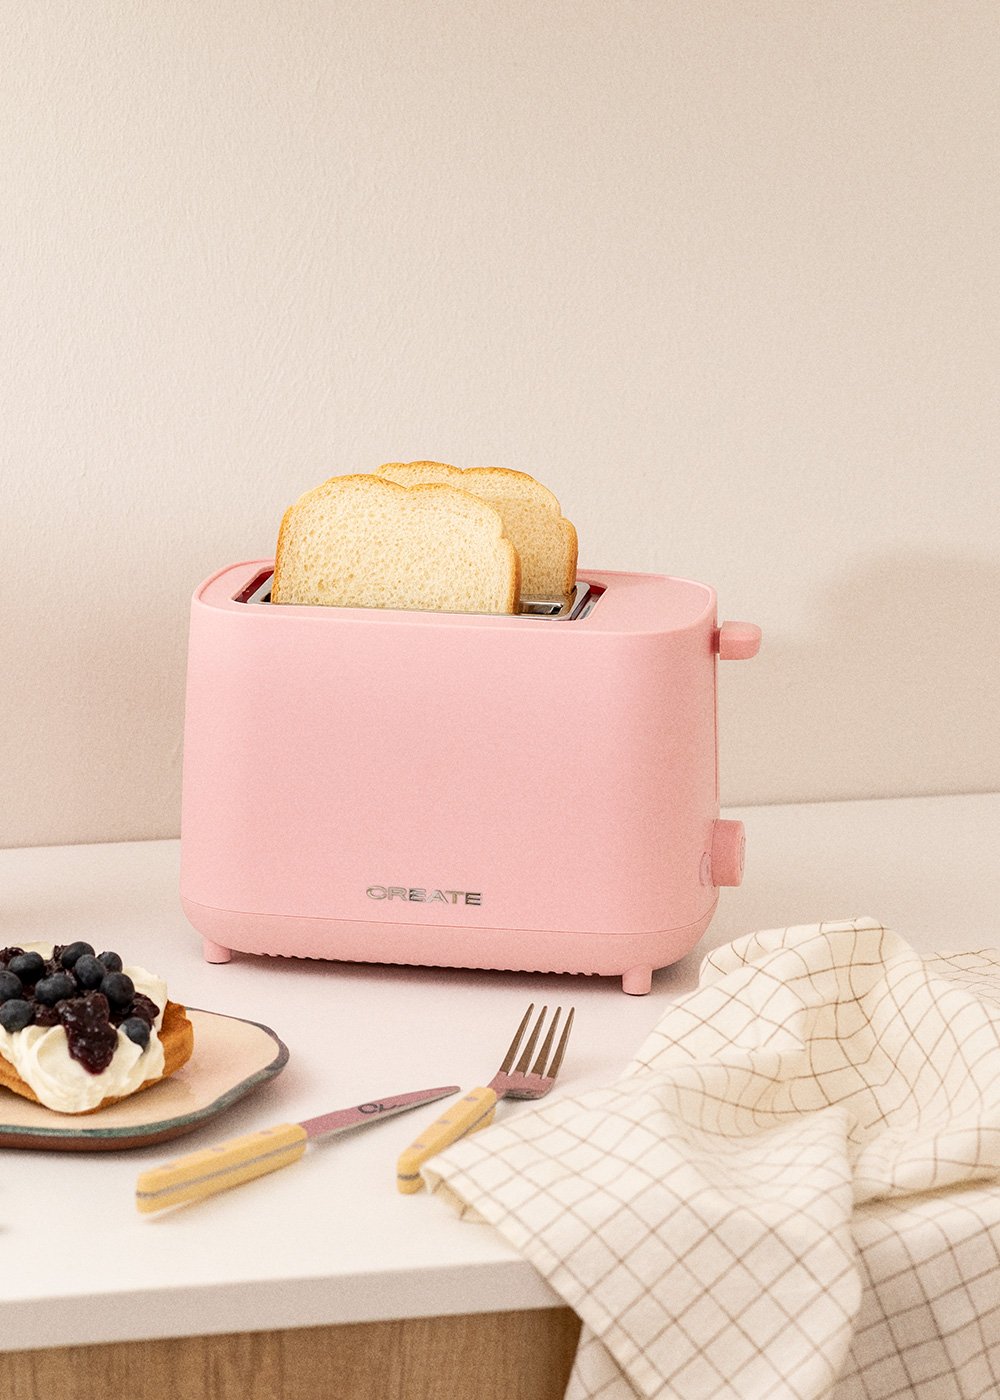 CREATE Toast Advance Touch- Grille-pain électrique à affichage digital